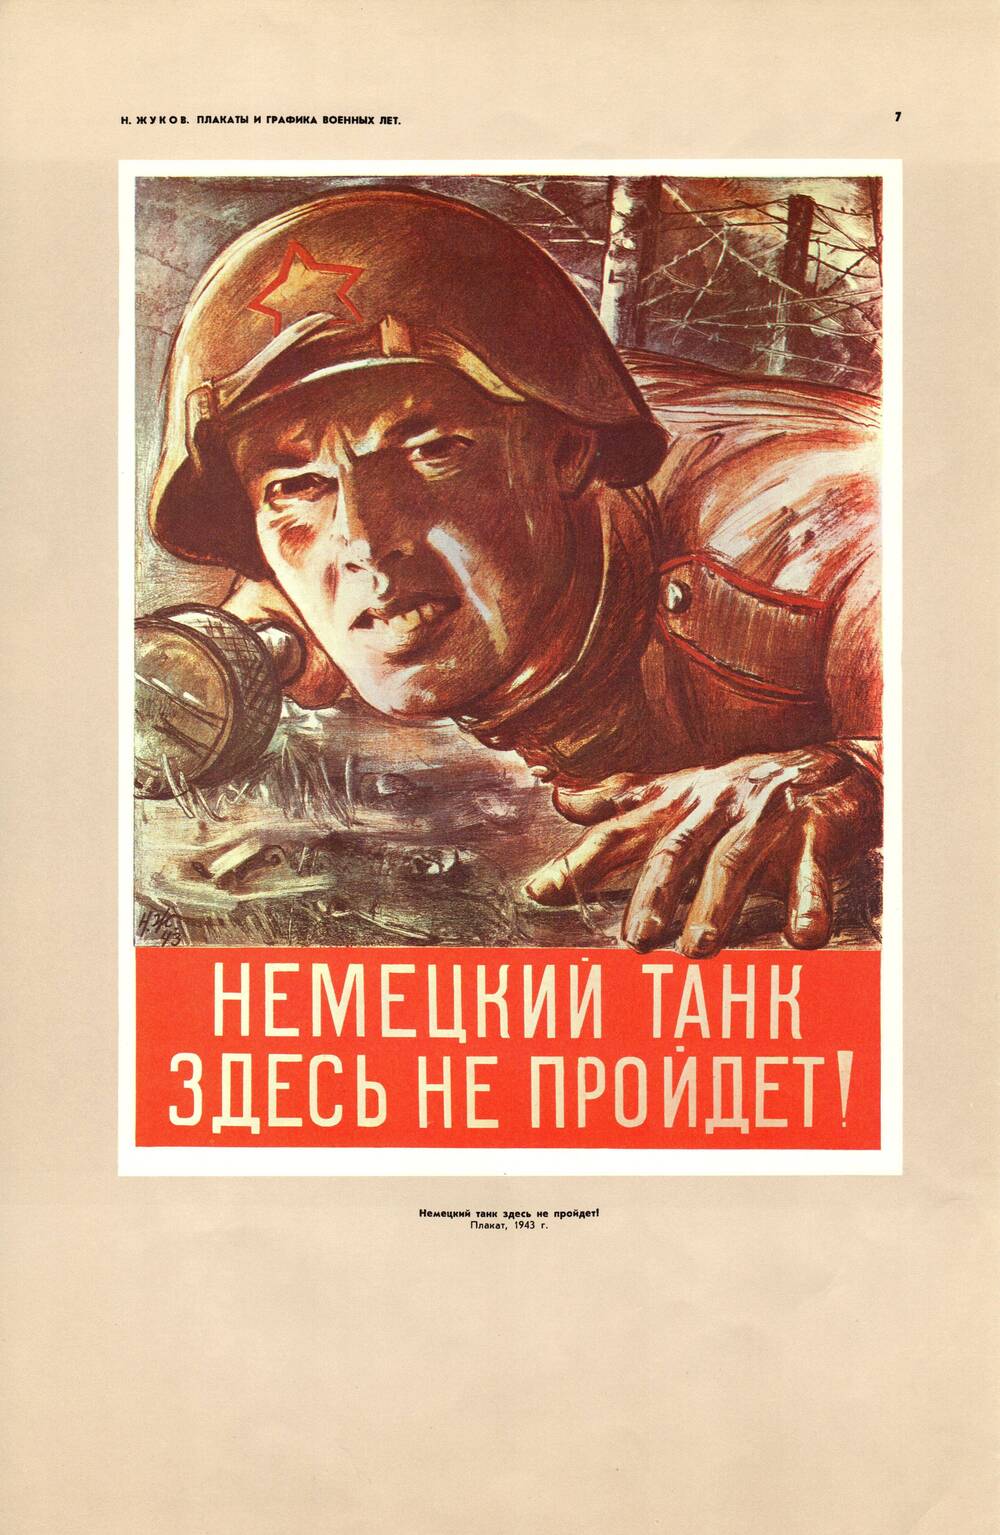 Плакат «Немецкий танк здесь не пройдёт!» 1943 г.
Николай Жуков. Типография издательства «Зоря», г. Днепропетровск. 1978 г.